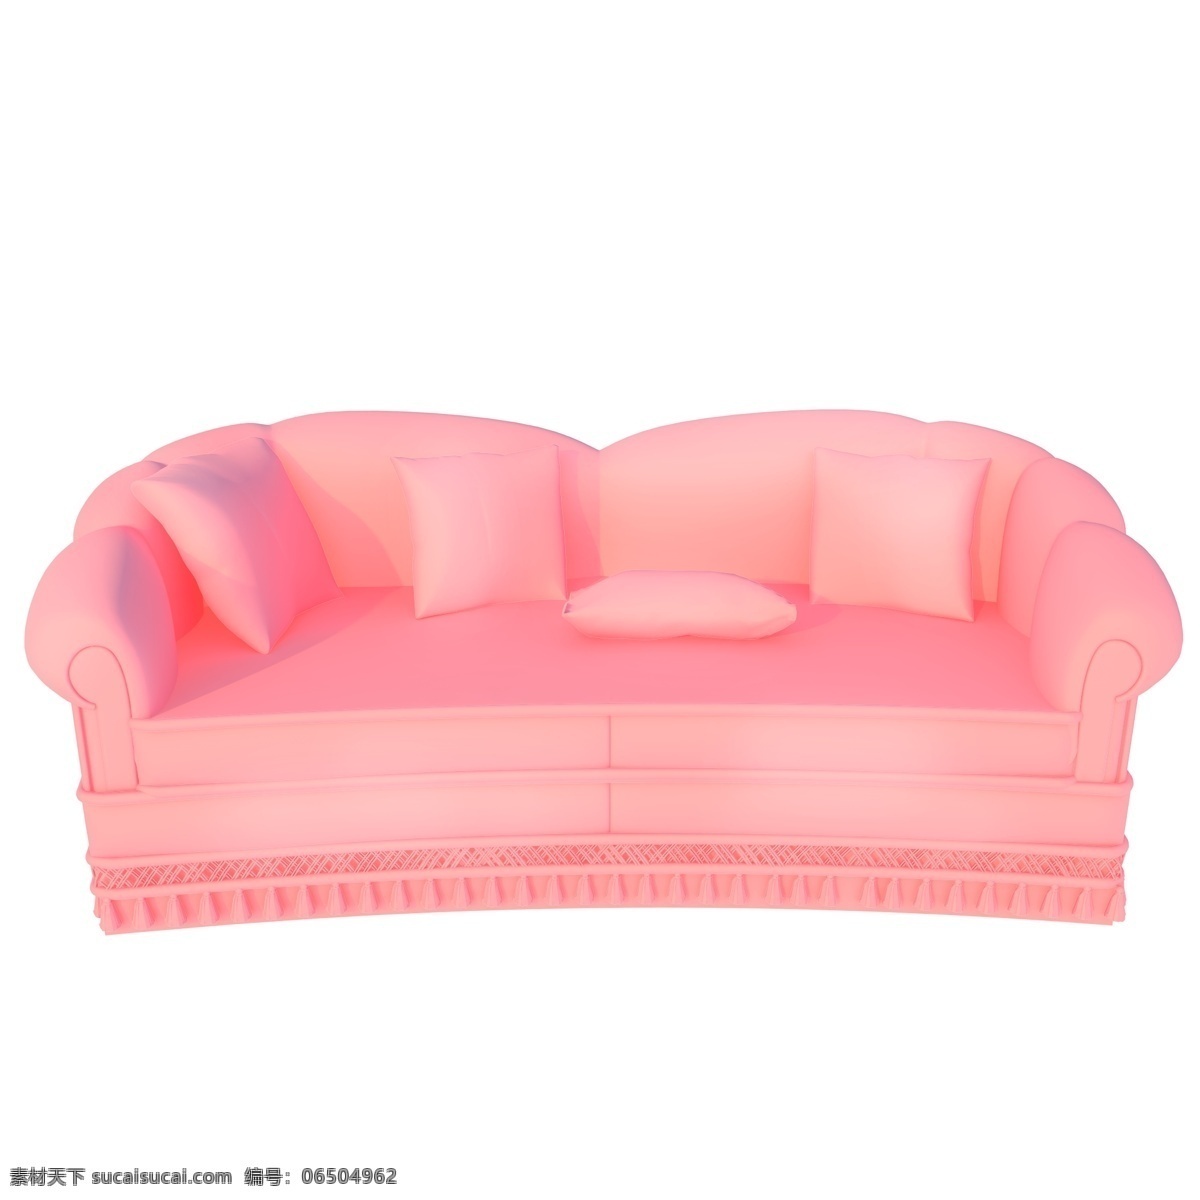 高贵双人沙发 奢华 浪漫粉色 时尚 沙发